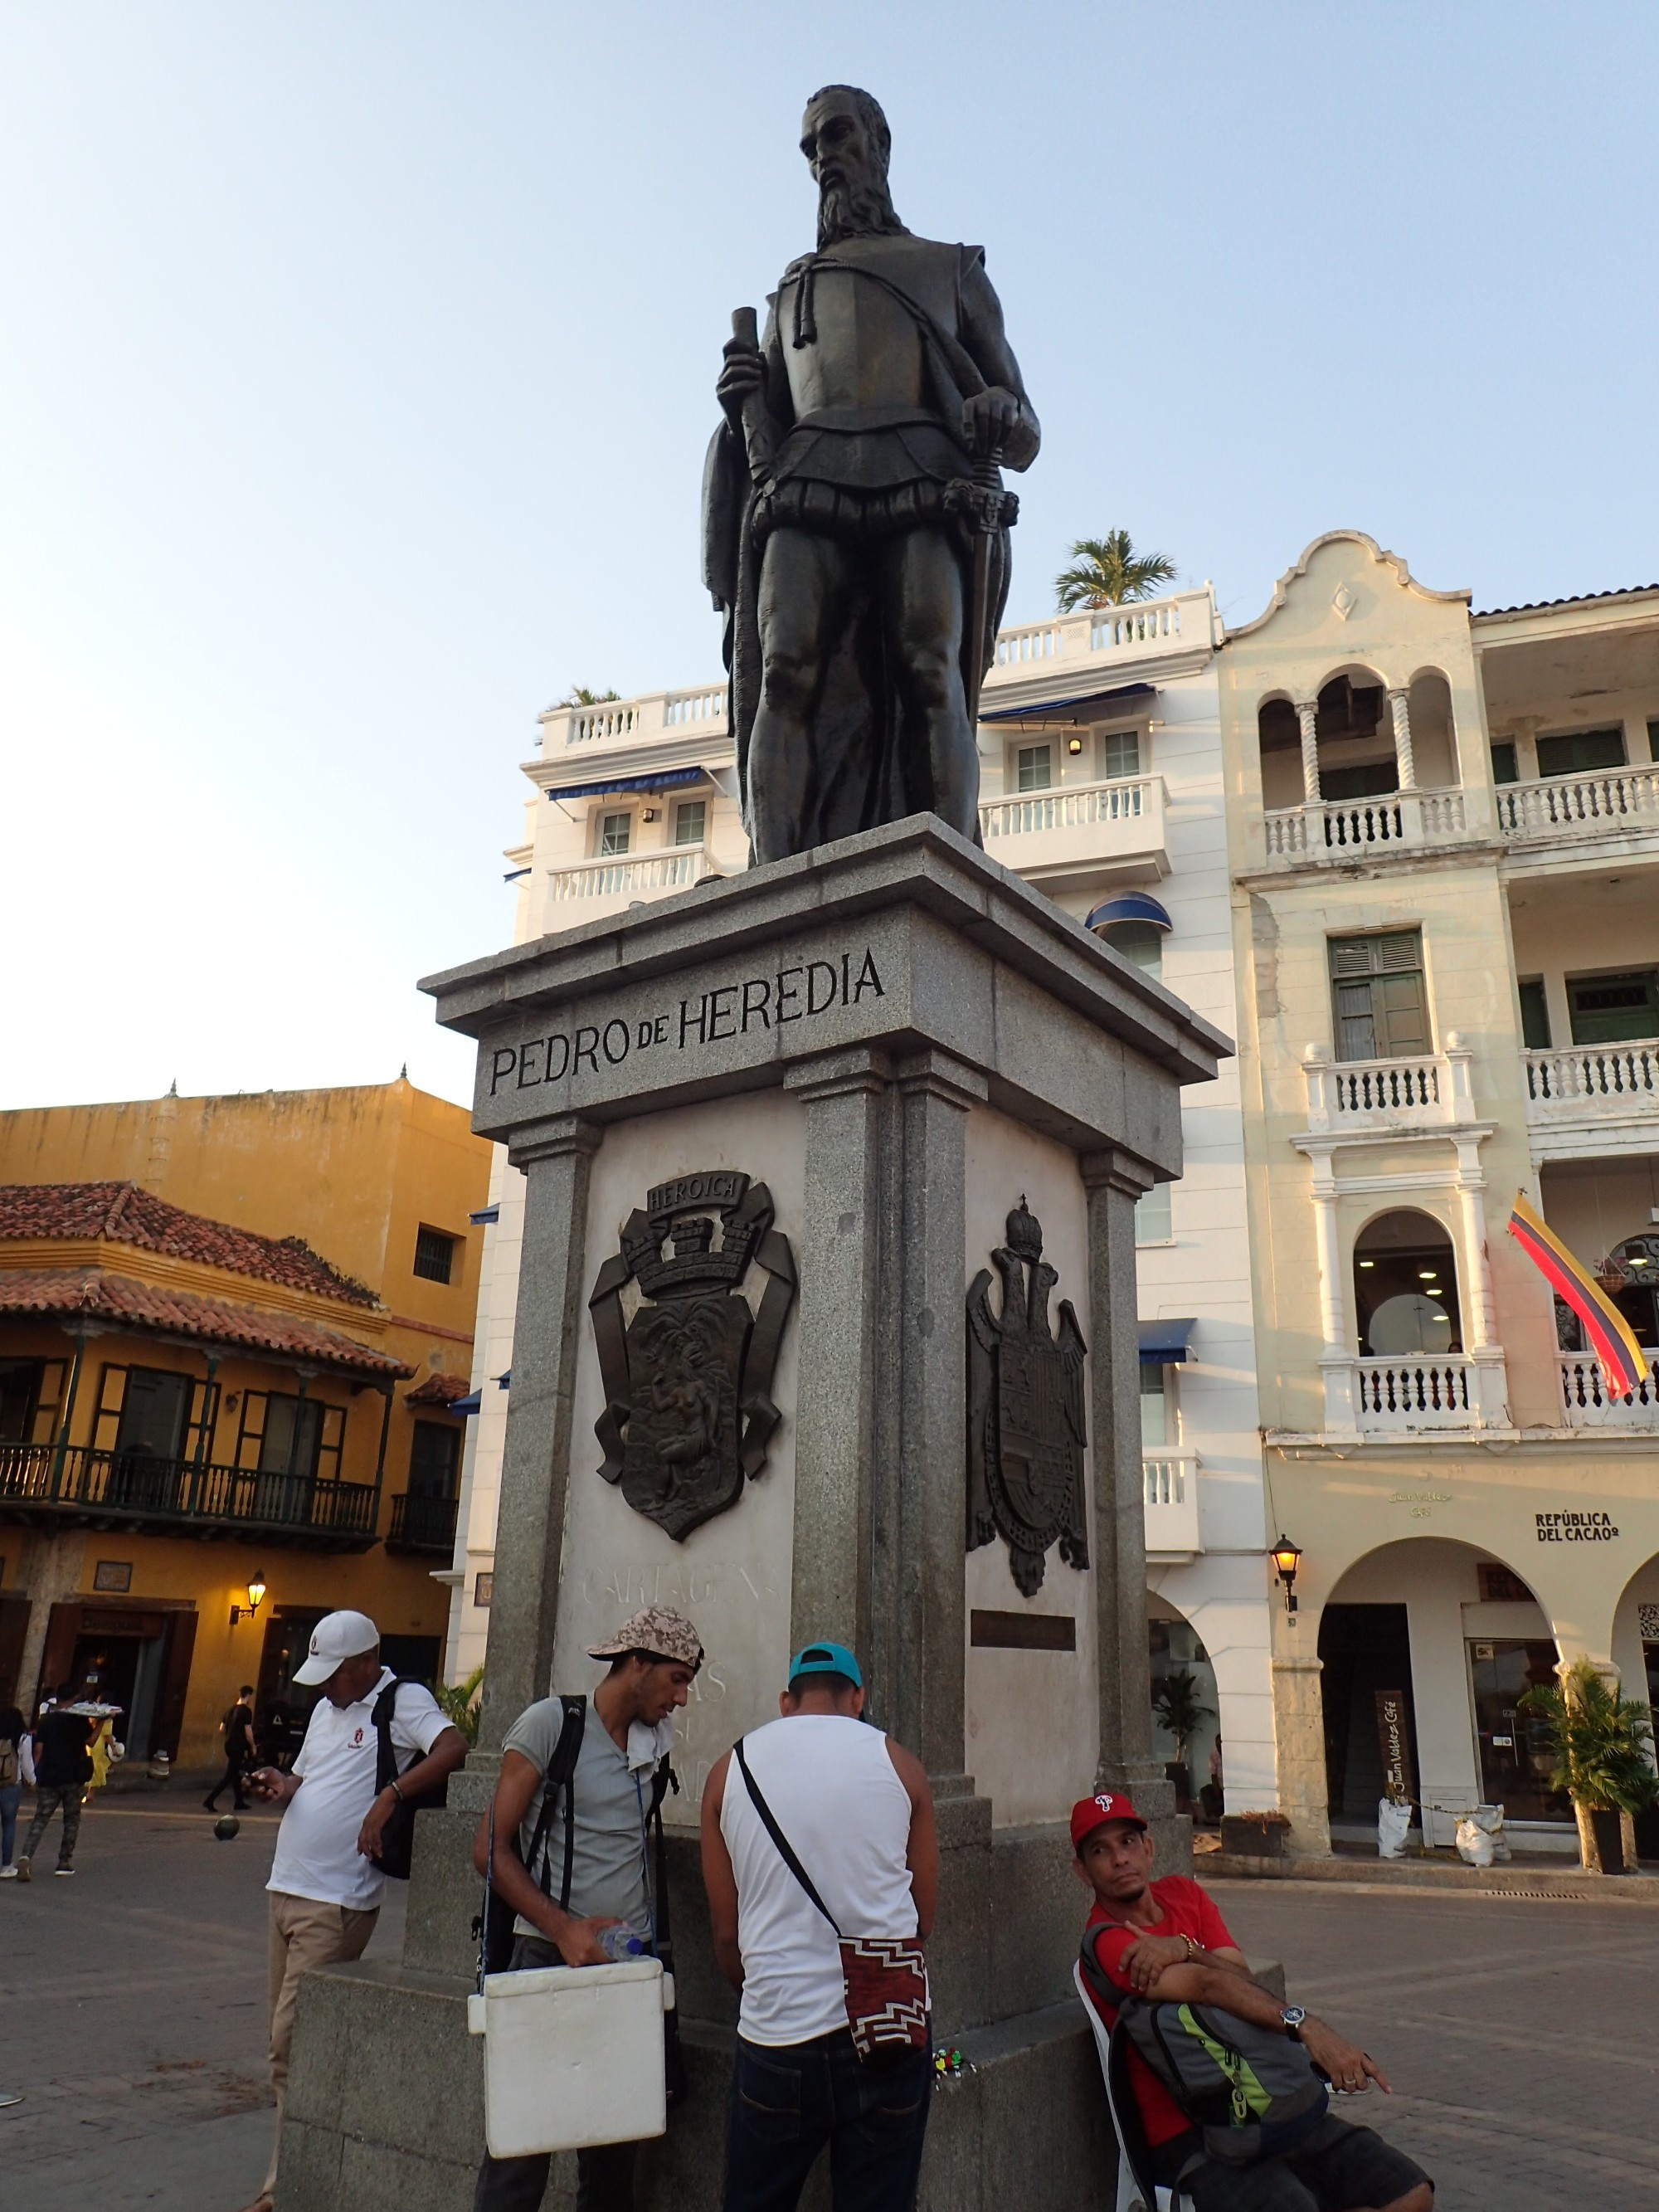 Pedro de Heredia Statue, Colombia